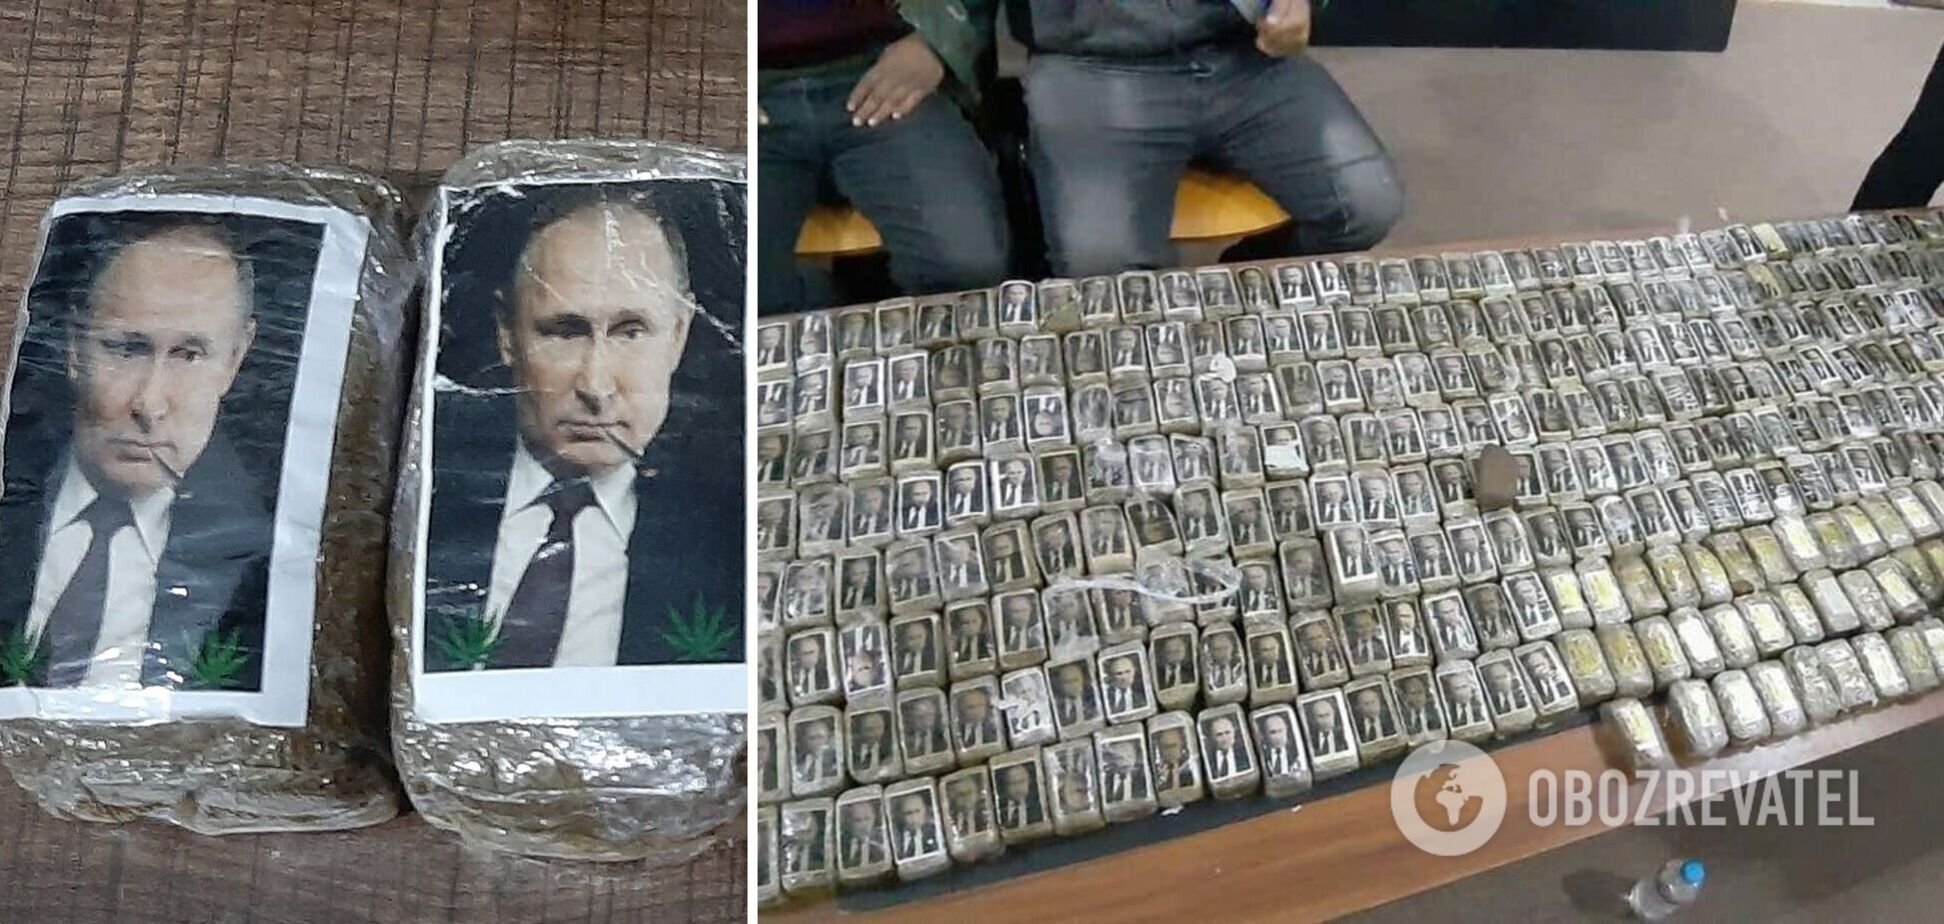 В Ливии обнаружили партию гашиша с портретом Путина: в сети волна шуток